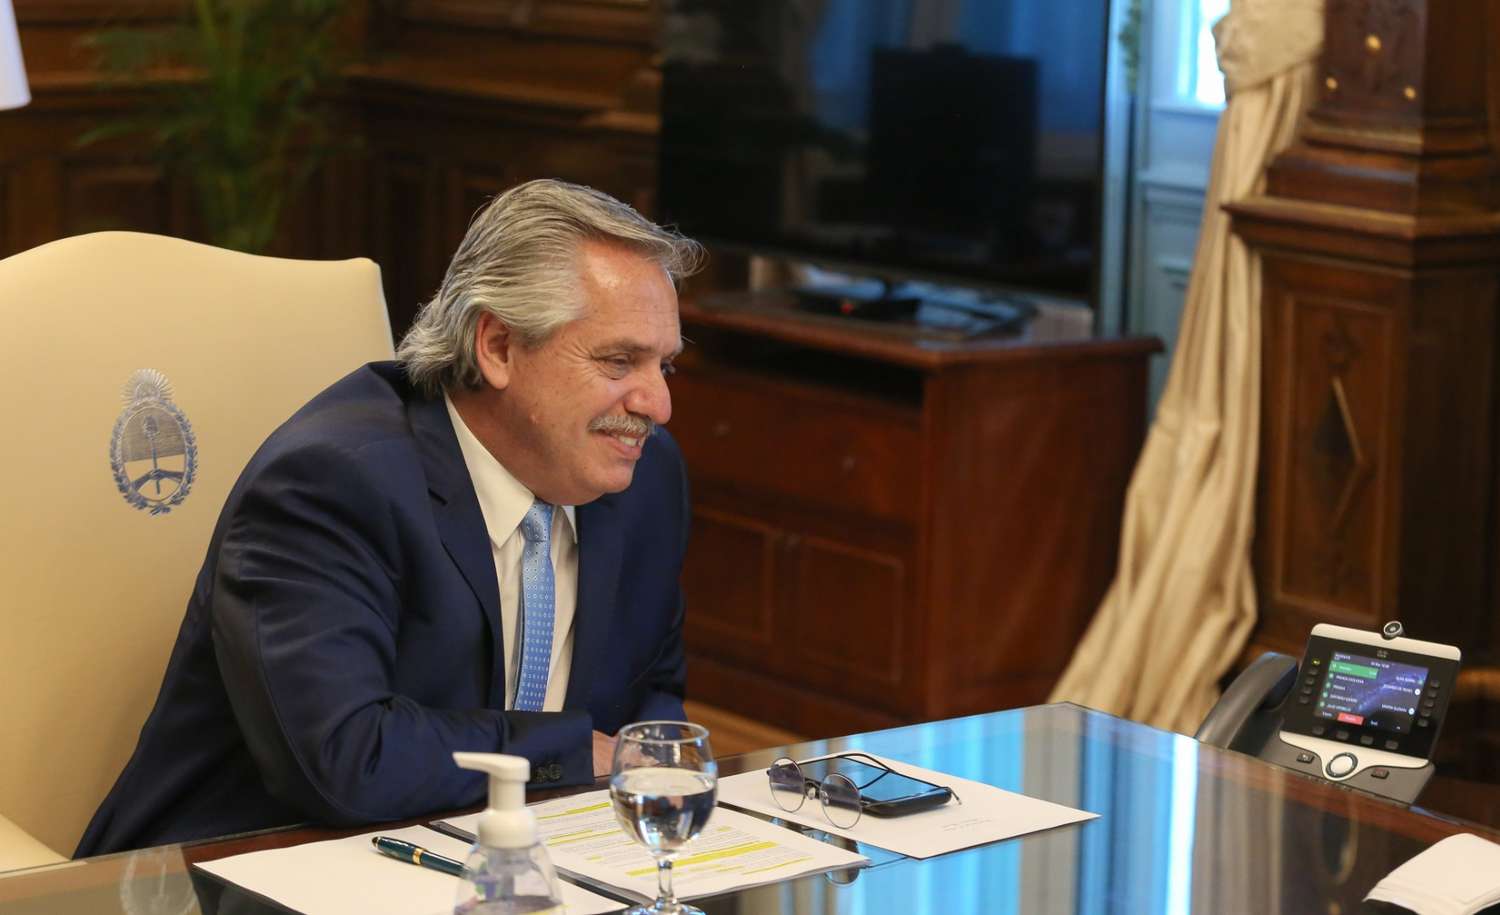 Fernández recibió una carta de  Biden y dialogó con su asistente  especial por videoconferencia